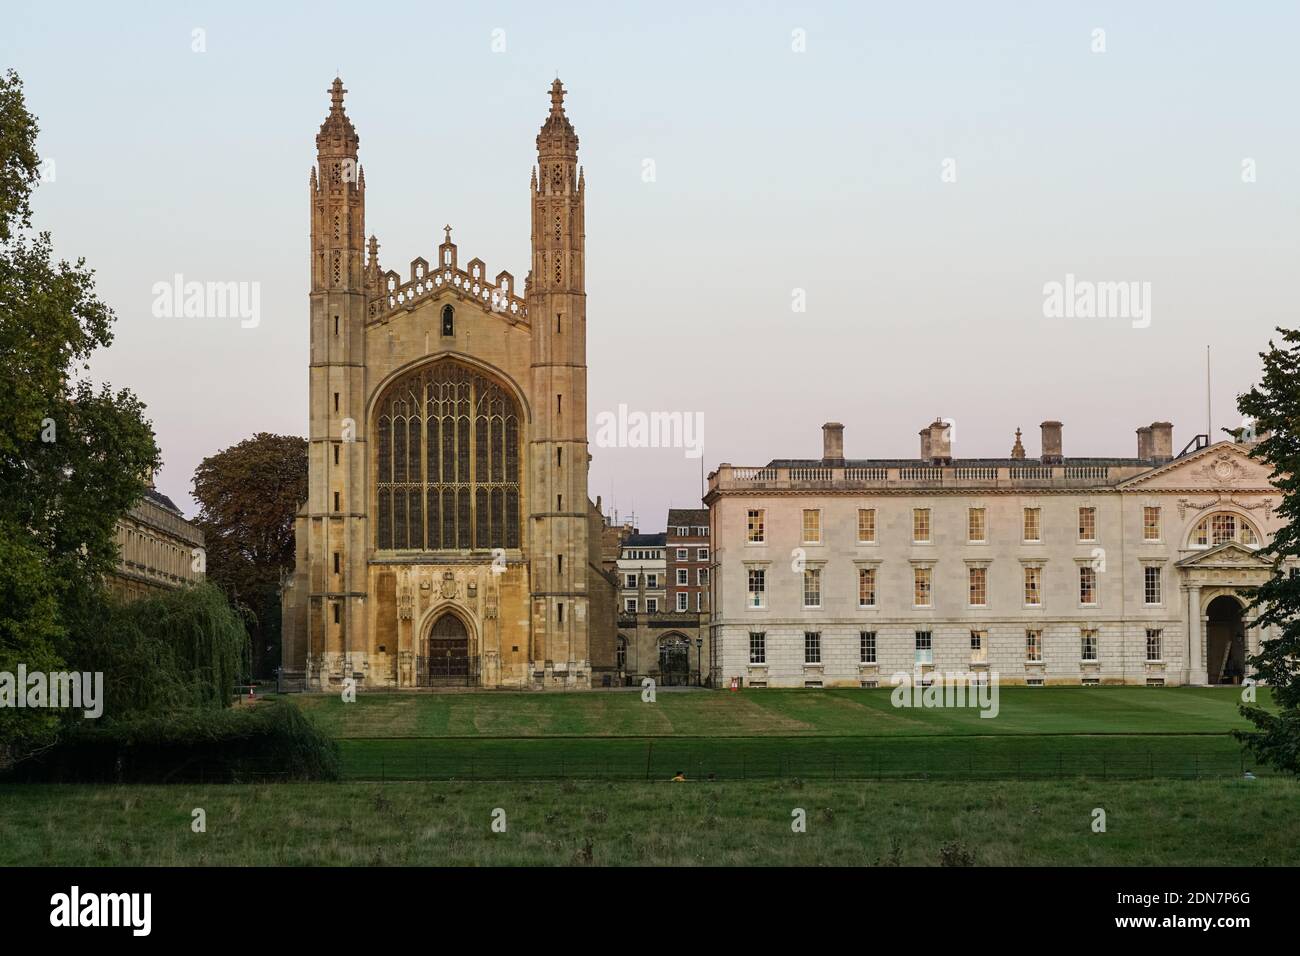 King's College Chapel à l'Université de Cambridge, vue de dos, Cambridge Cambridgeshire Angleterre Royaume-Uni Royaume-Uni Banque D'Images